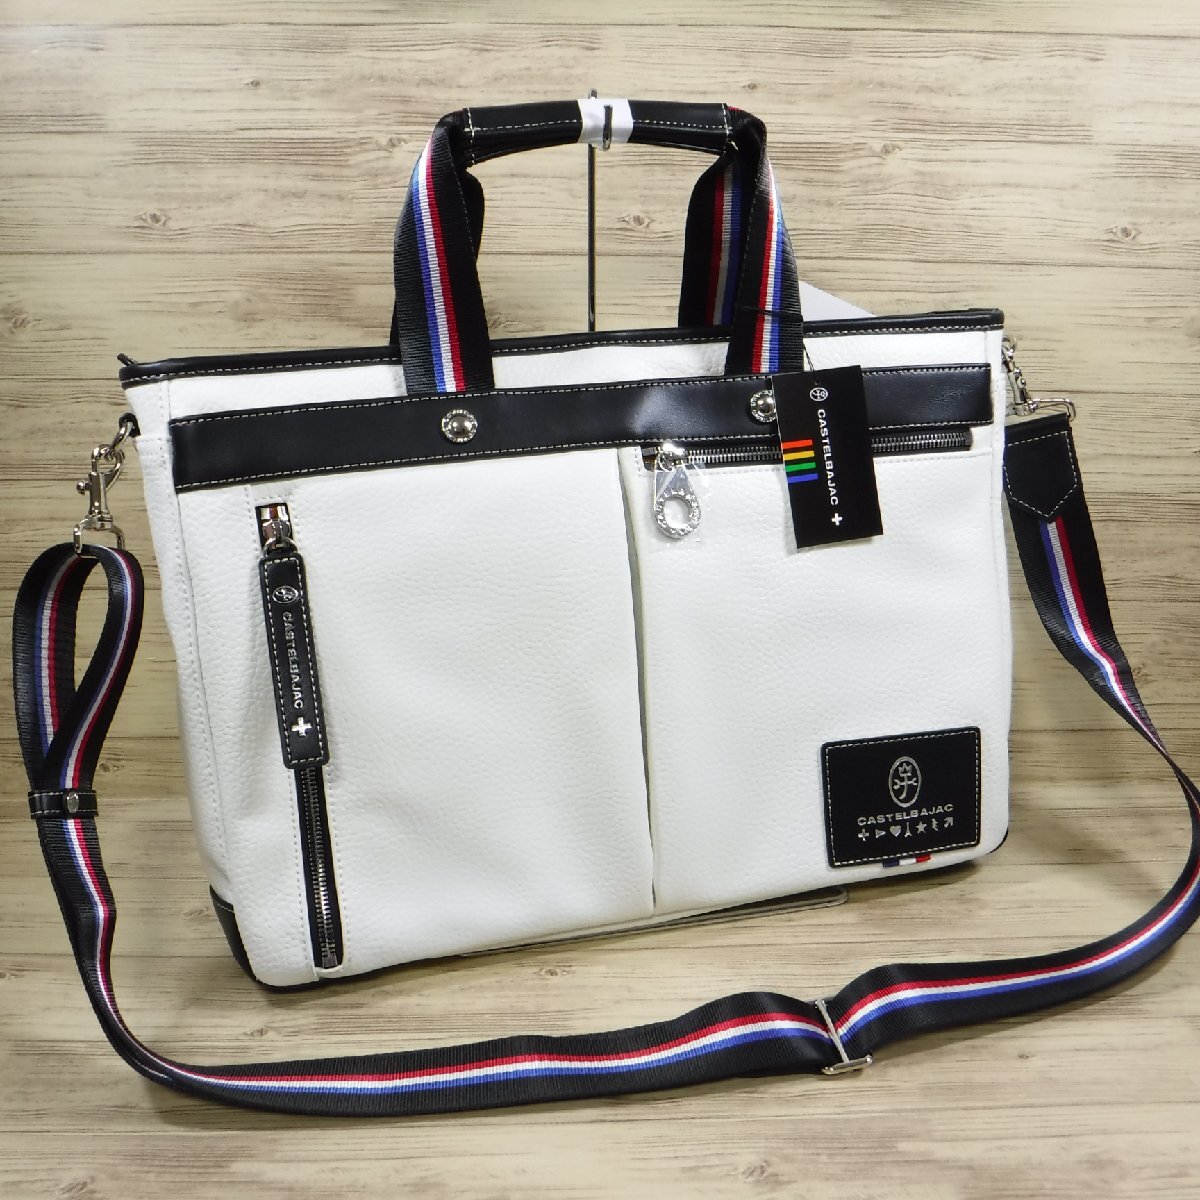 BB944 Castelbajac обычная цена 23100 иен новый товар 2WAY кожа портфель A4 легкий 31502 белый low Len biz большая сумка сумка на плечо 